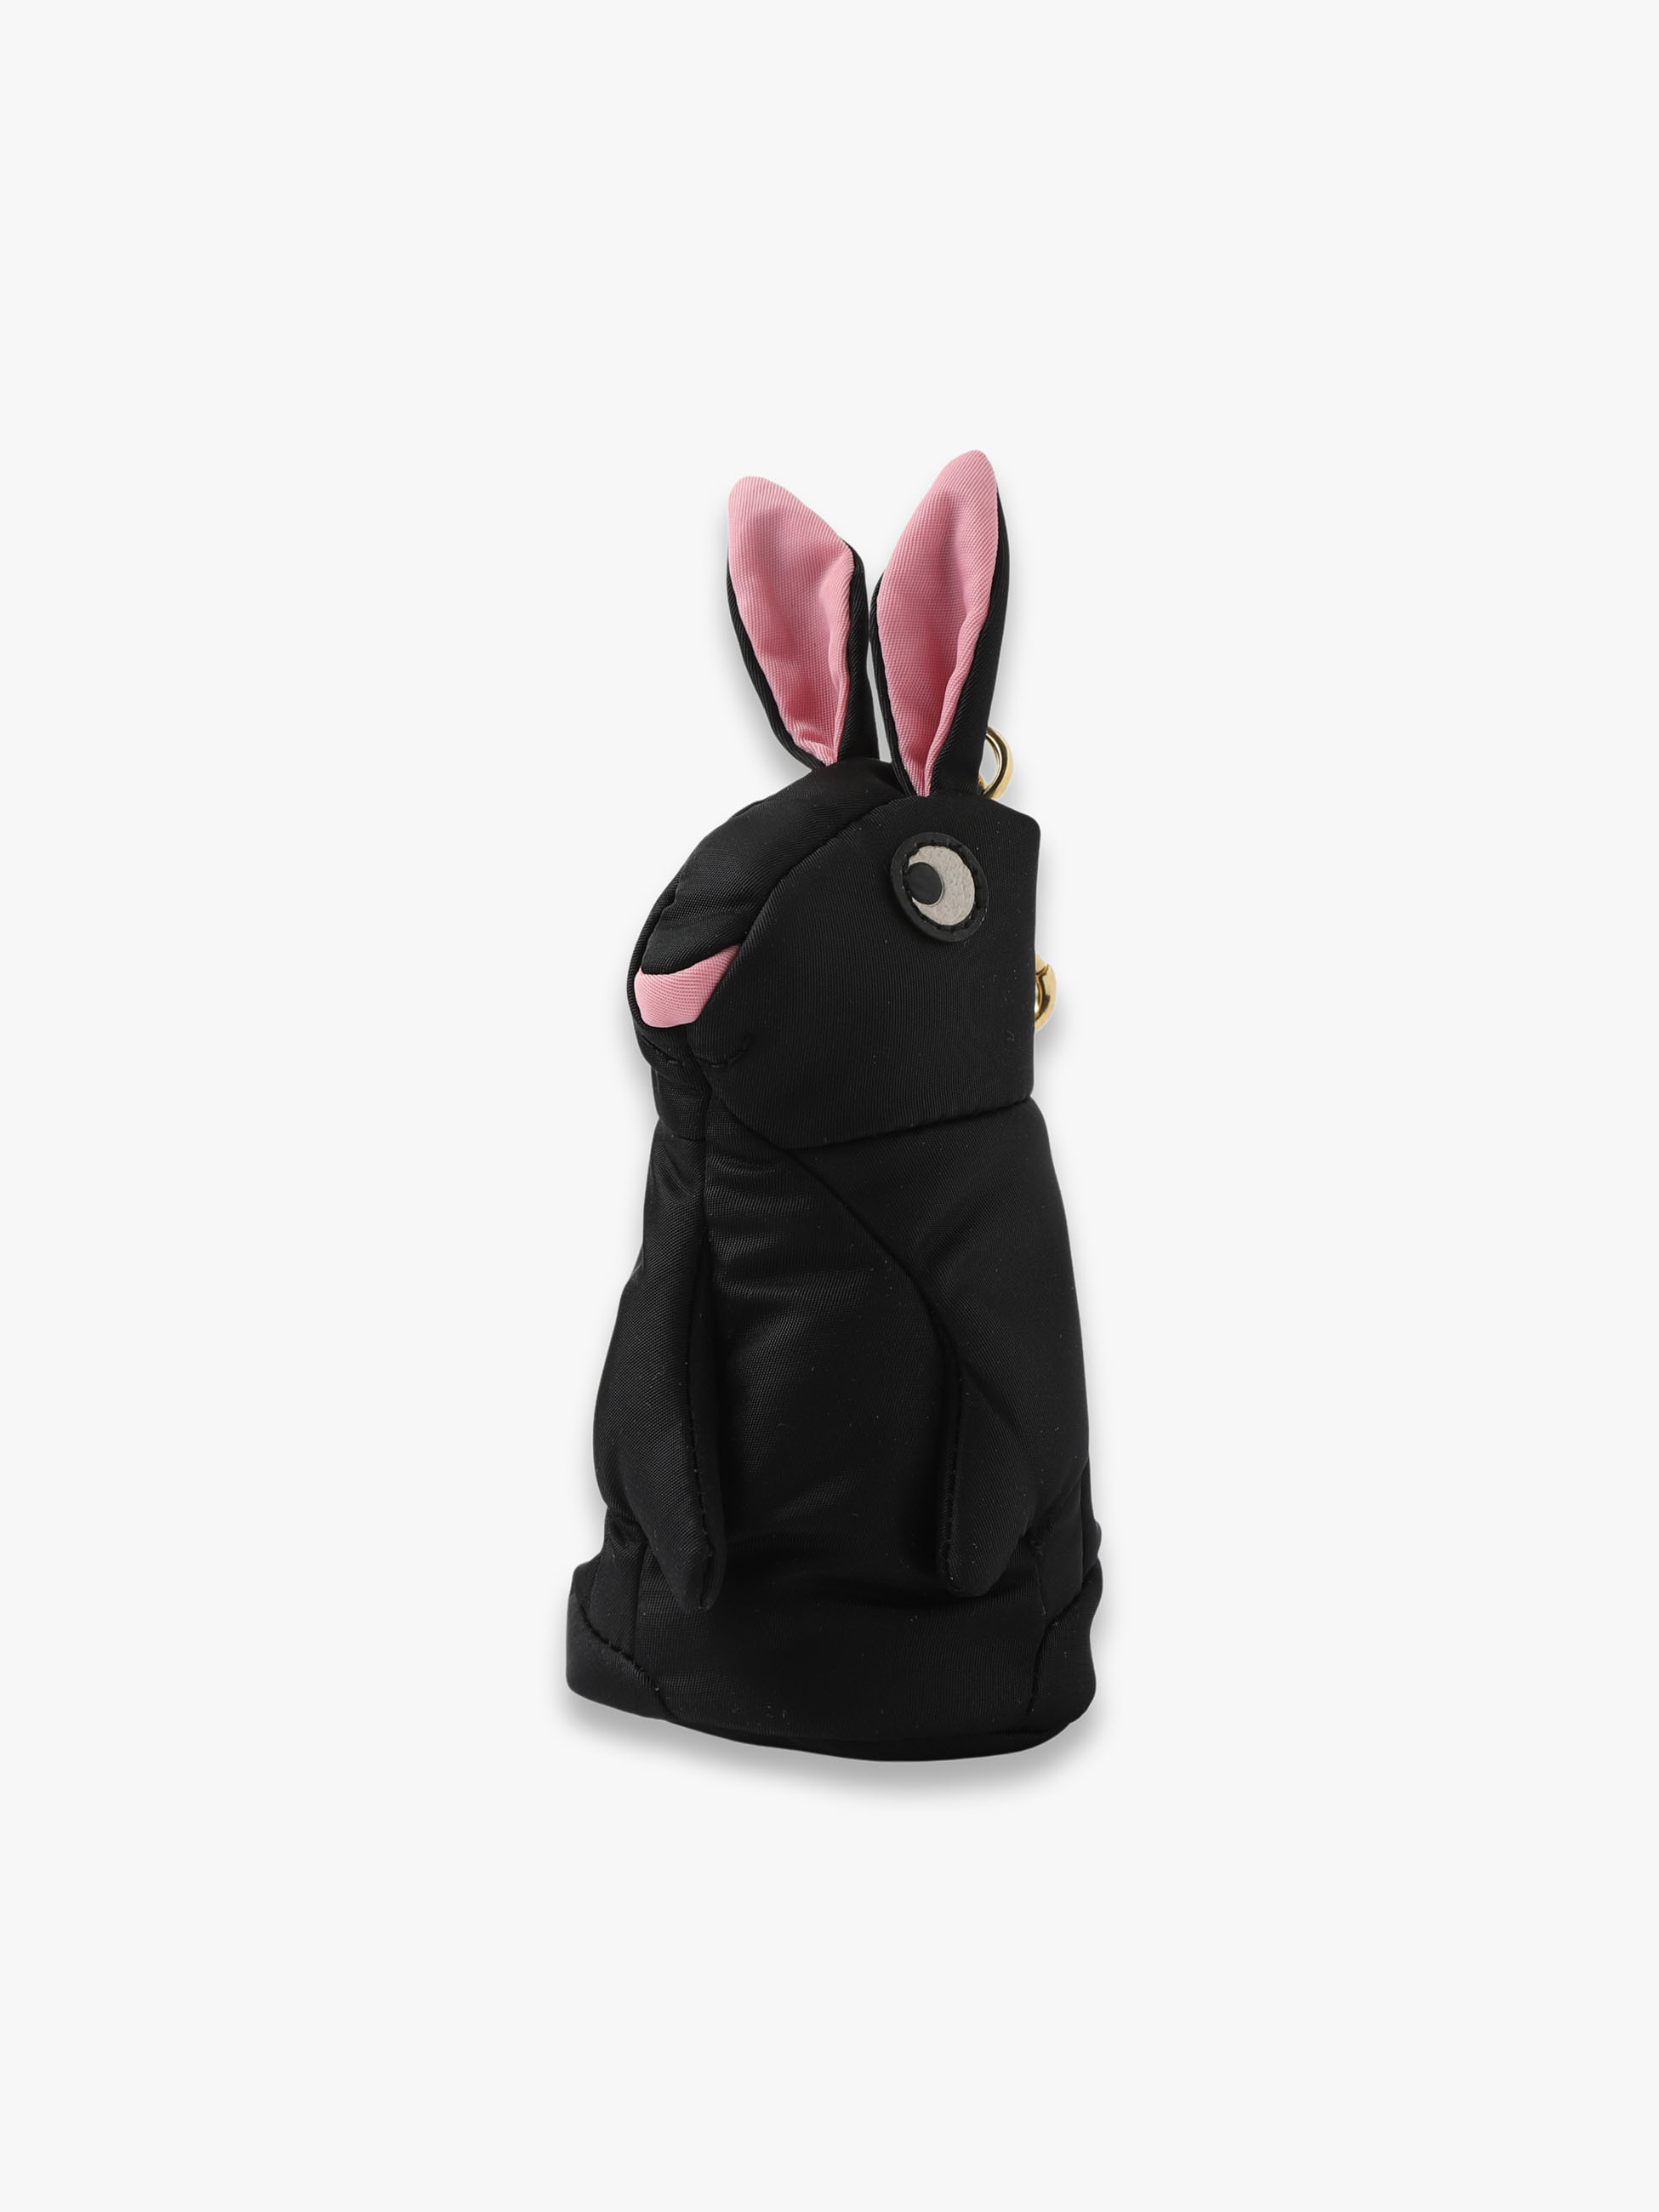 Rabbit in Black Charm Shopper Tote Bag